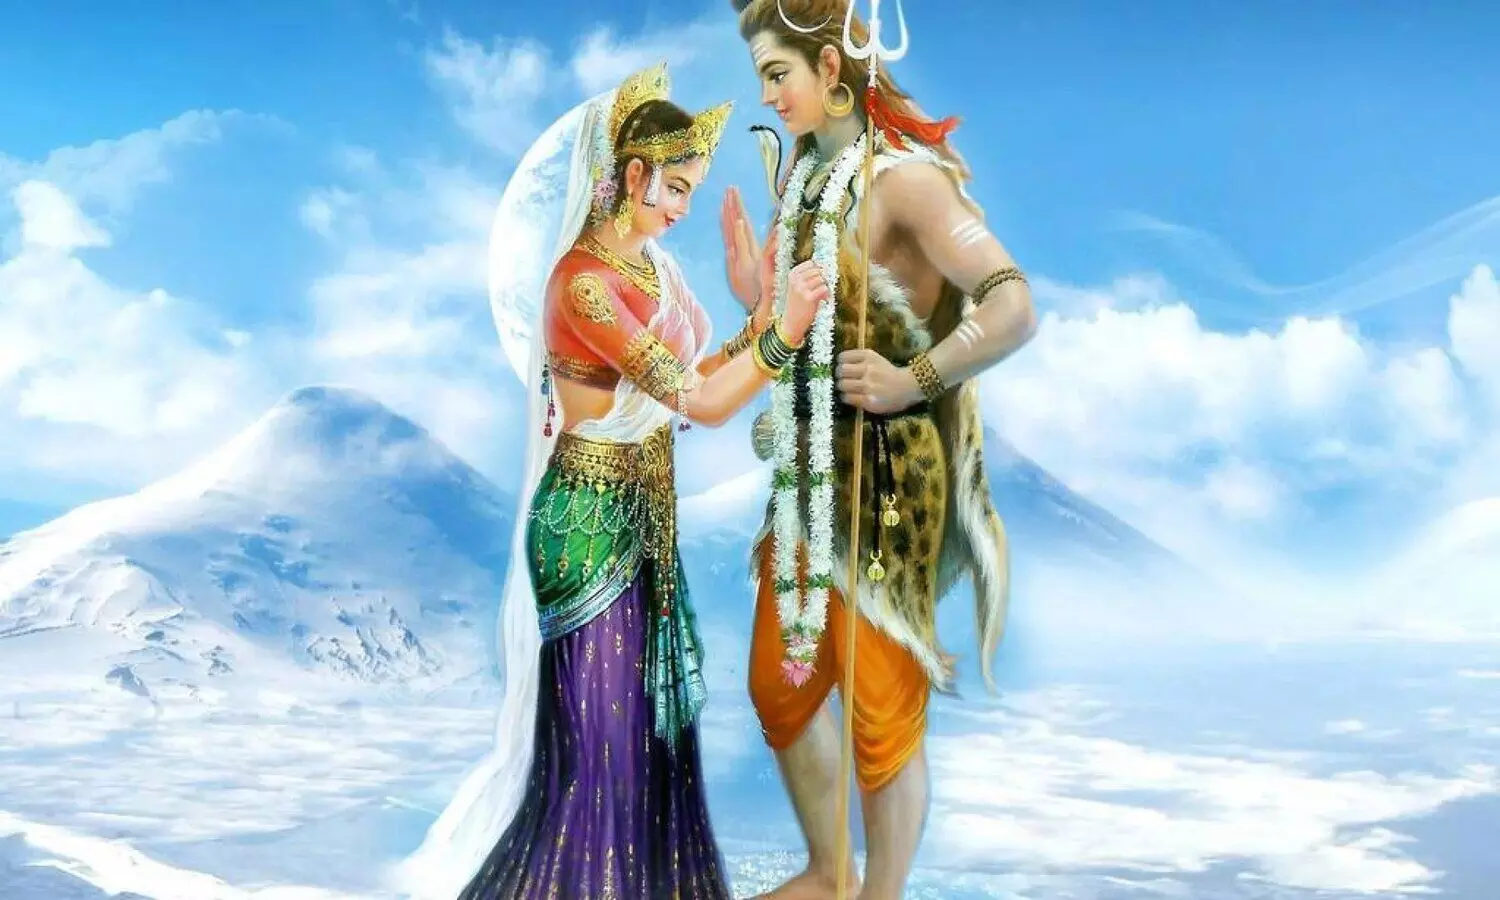 सबसे पहले भगवान शिव ने विवाह में माता पार्वती को दिए थे ‘सात वचन’, और ये तो आपको पता भी नहीं होगा!